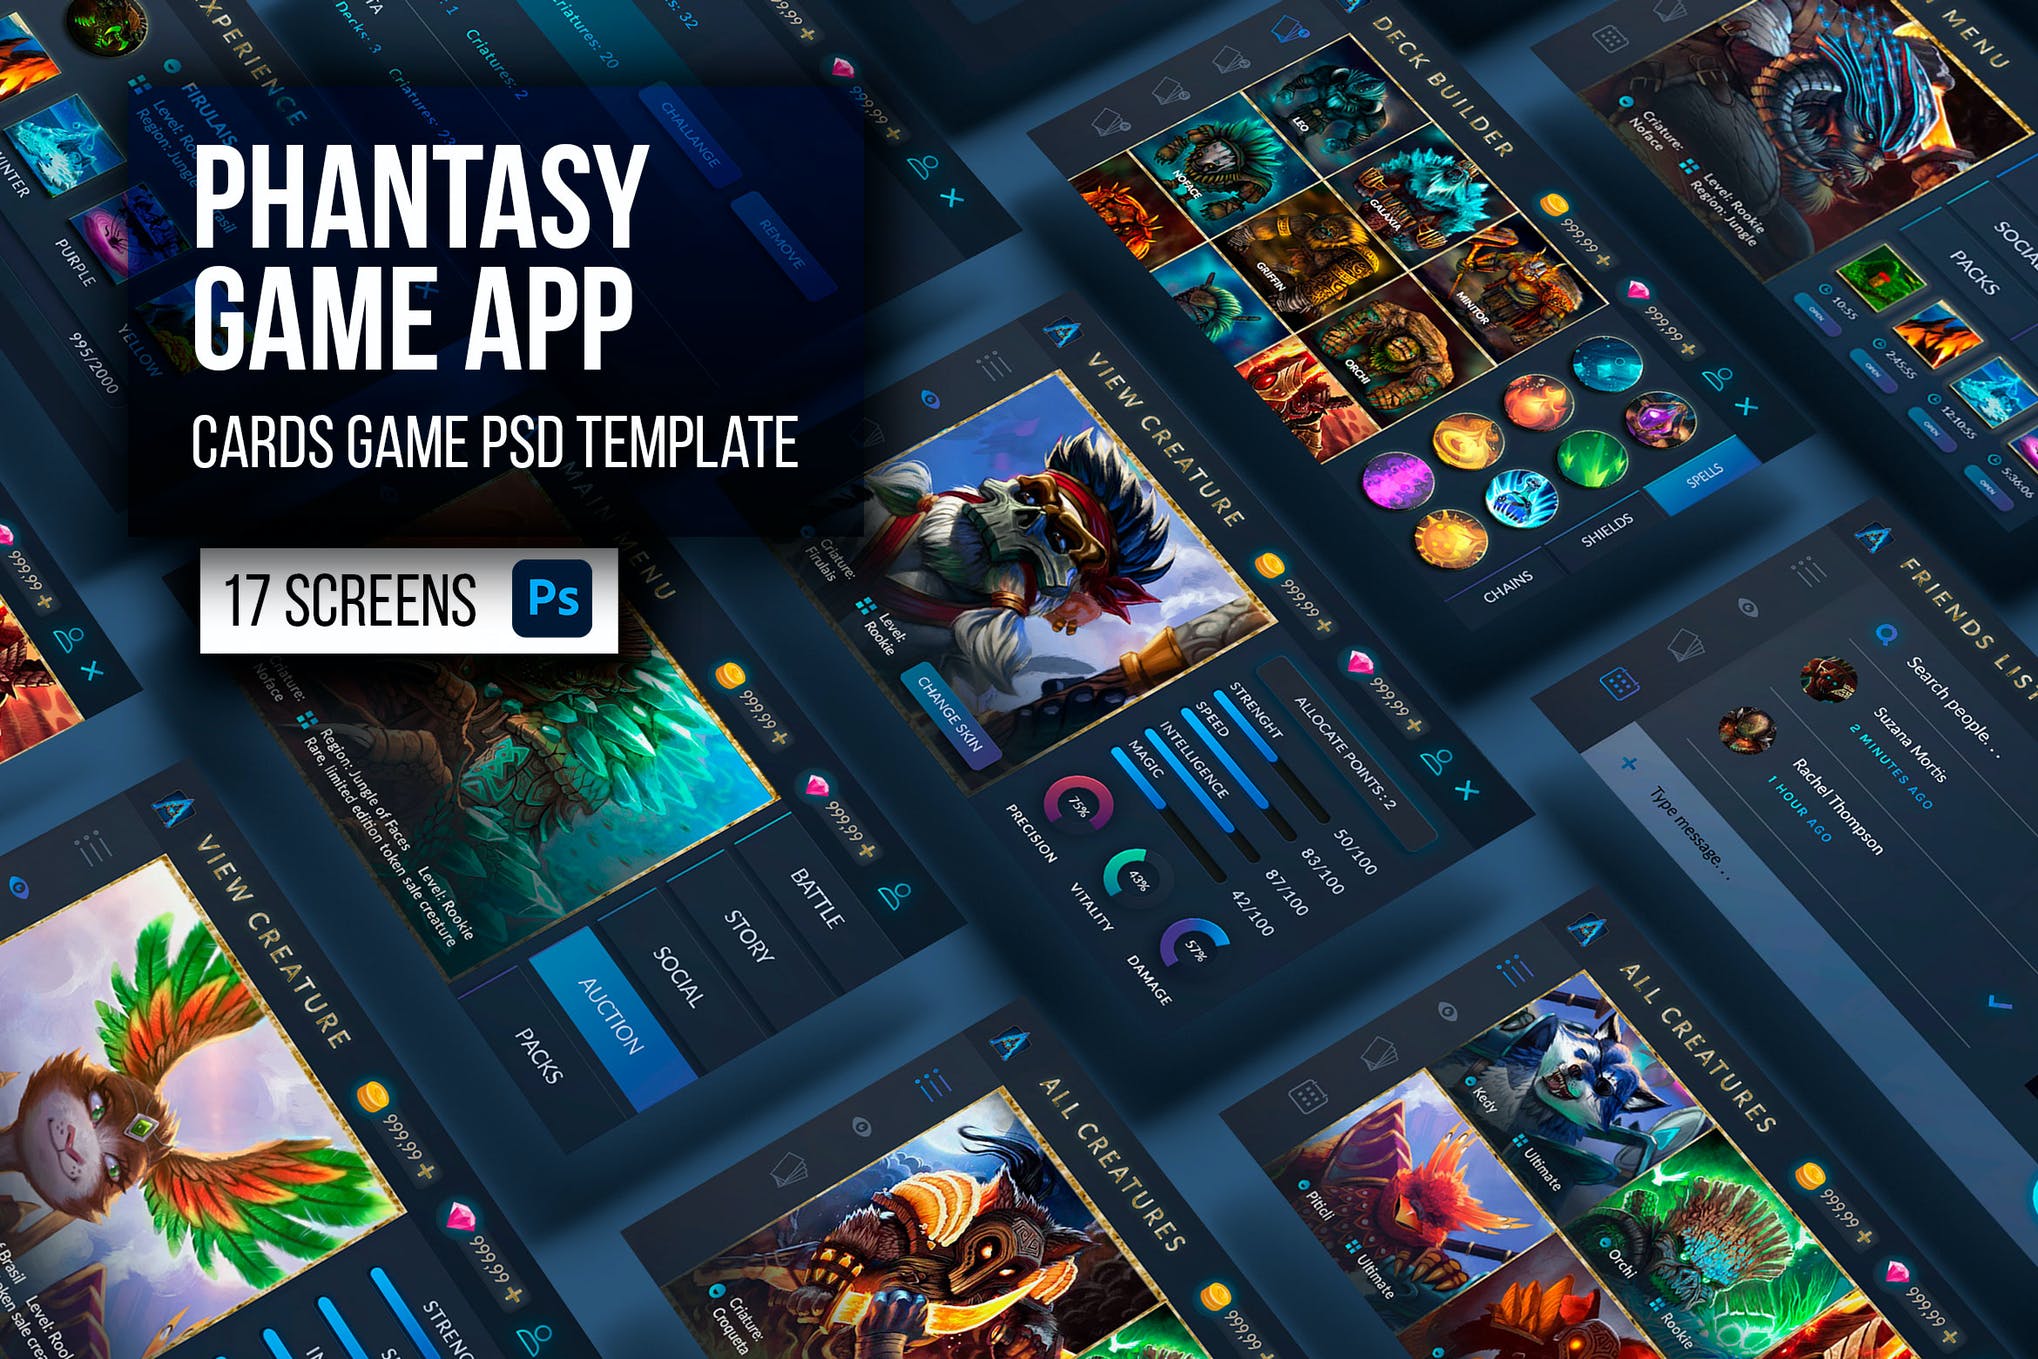 Phantasy Dark Cards Game App